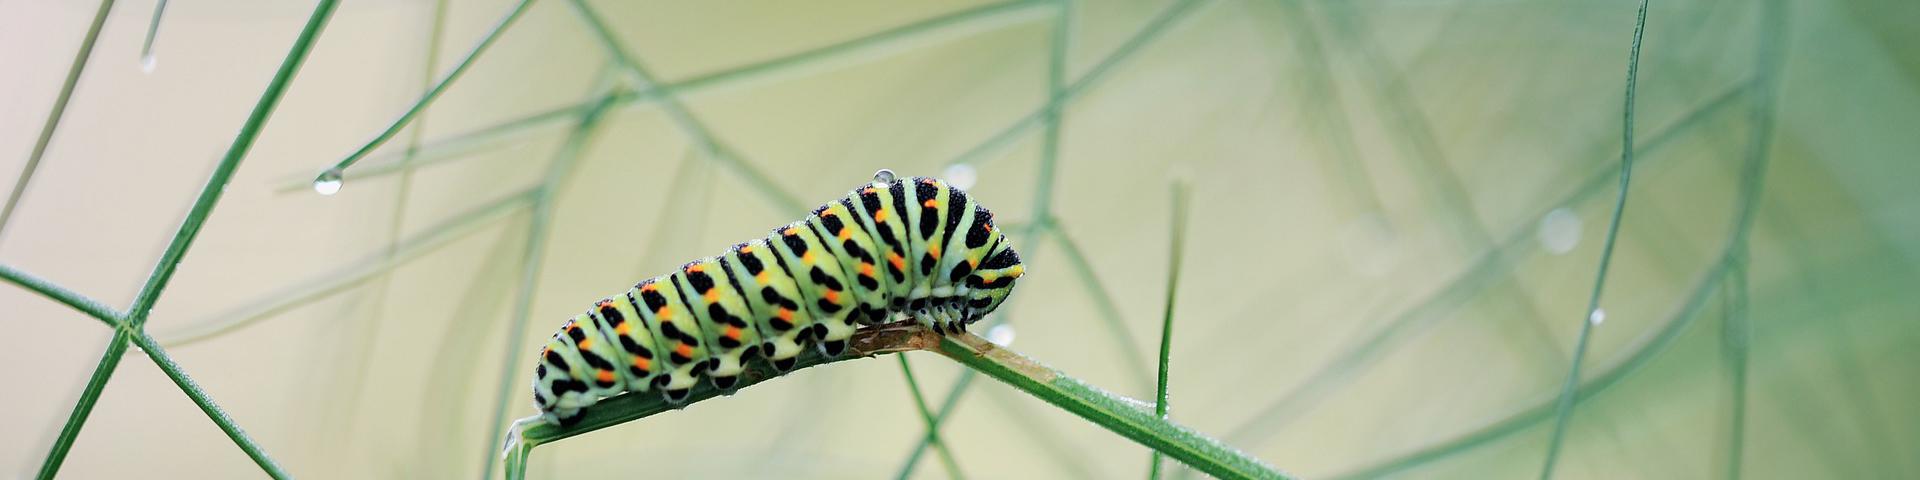 caterpillar 3 header